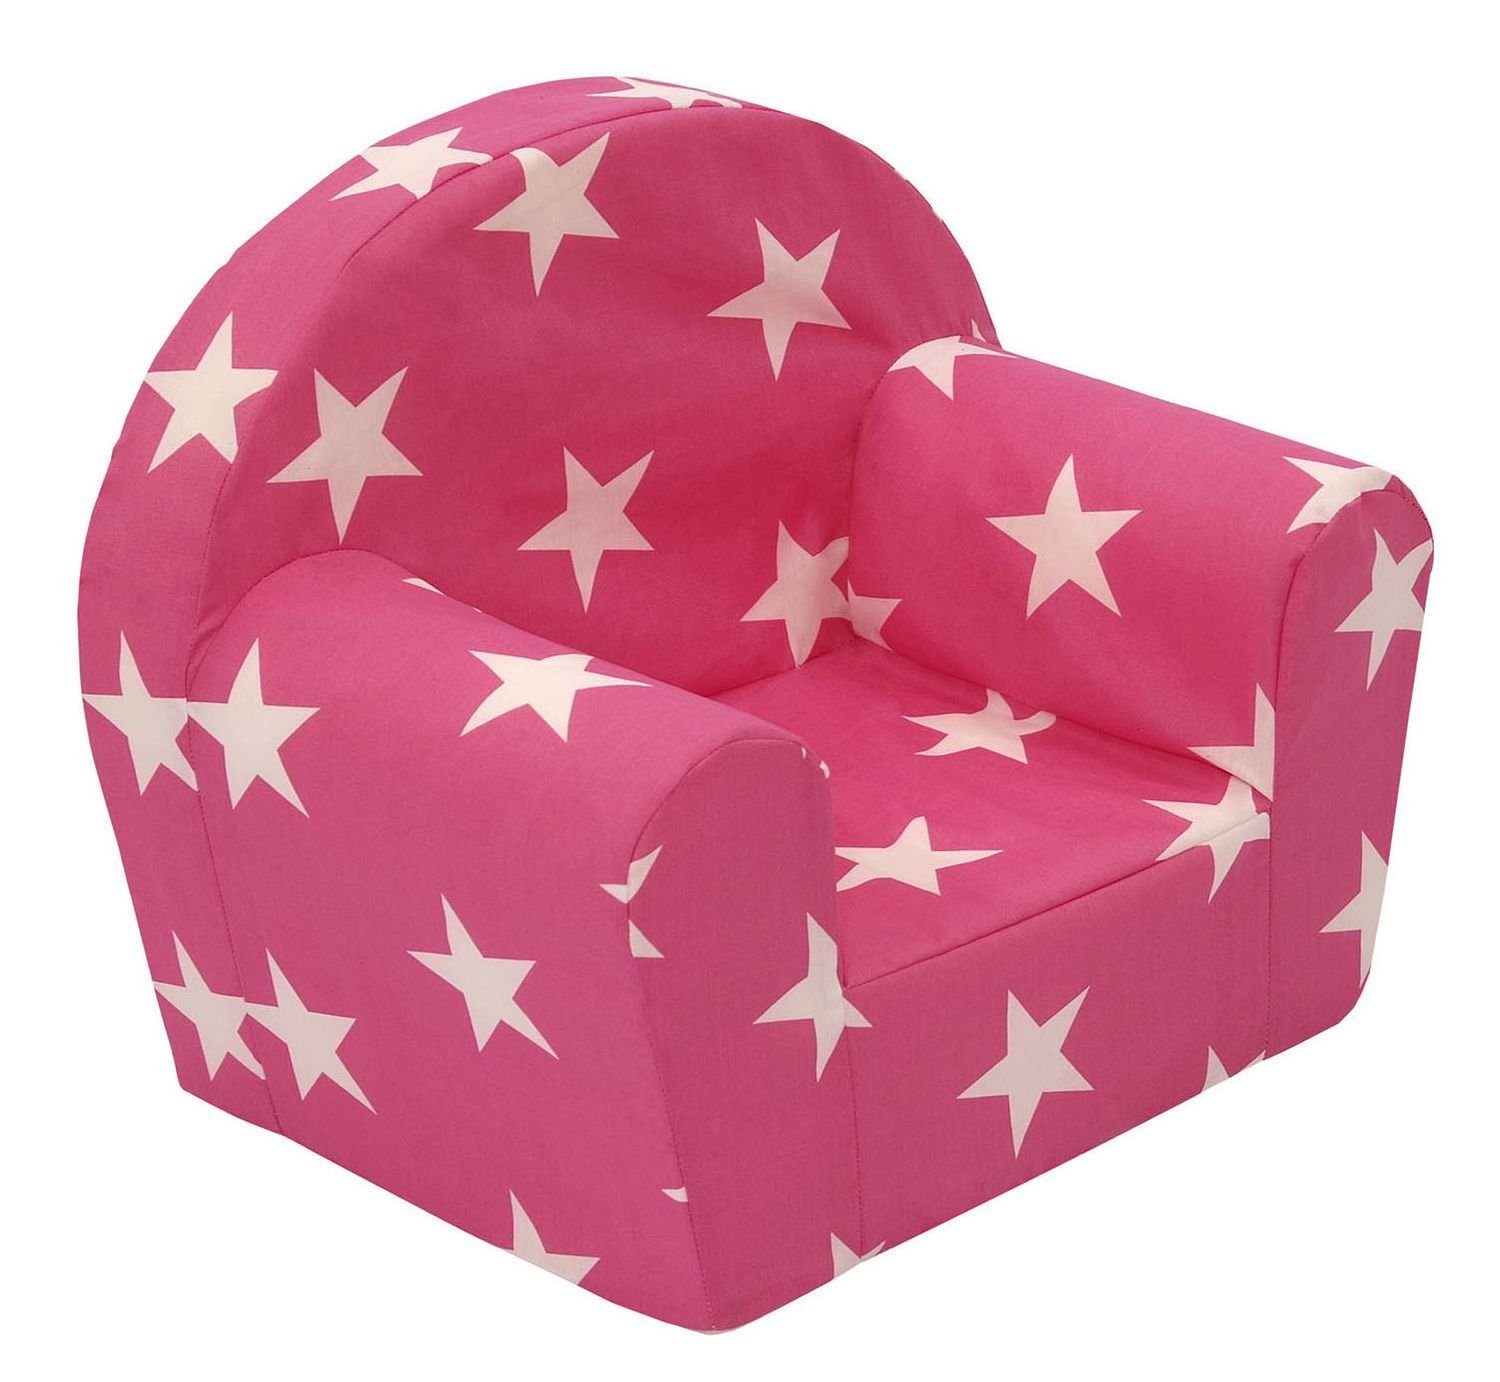 BURI Gartensessel Kindersessel pink Spielsessel Kinderzimmermöbel Sessel Kindersofa Kind